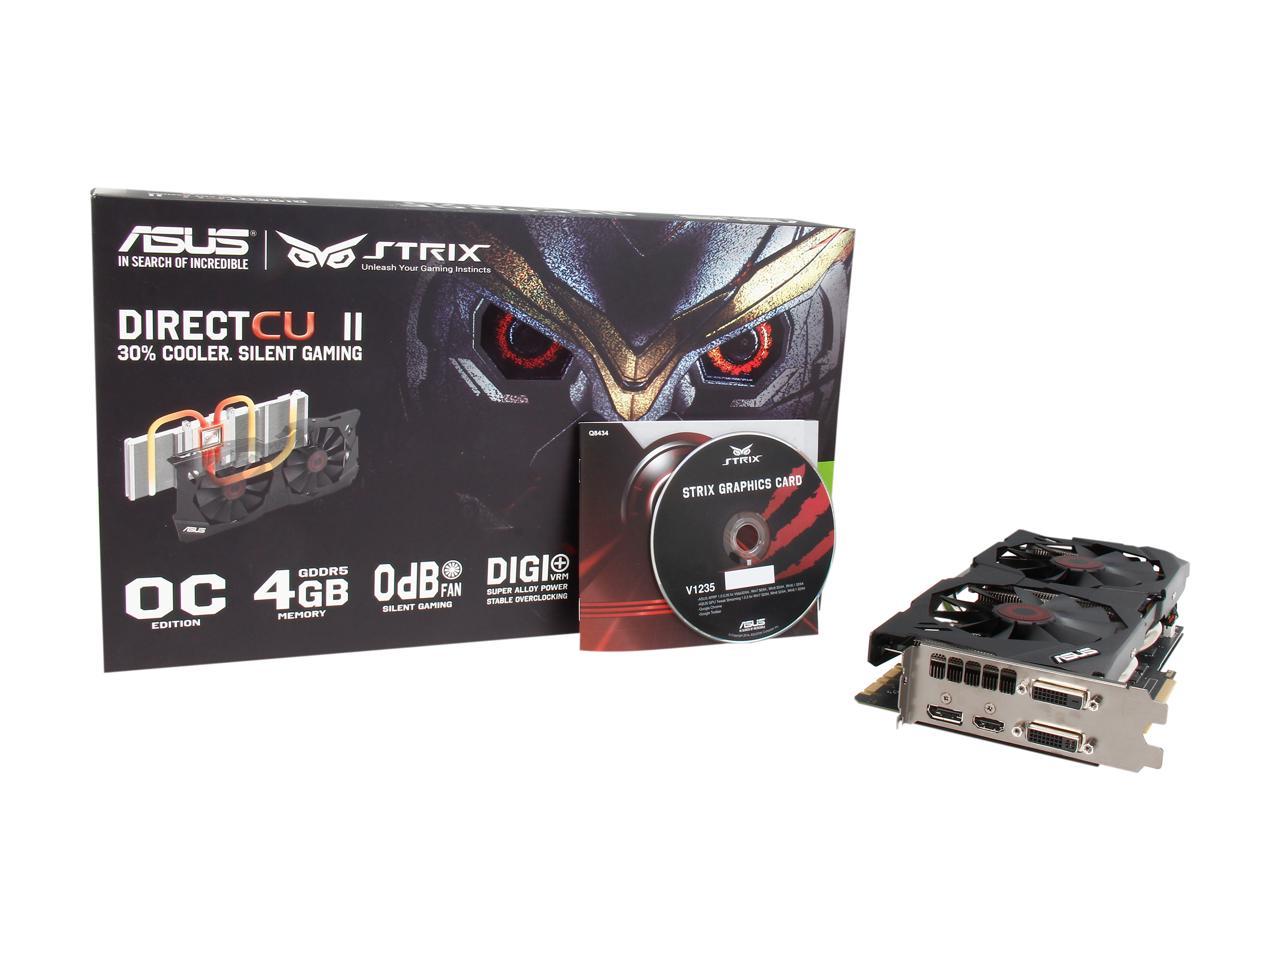 Asus Geforce Gtx 970 Strix Gtx970 Dc2oc 4gd5 G Sync Support Video Card Newegg Com